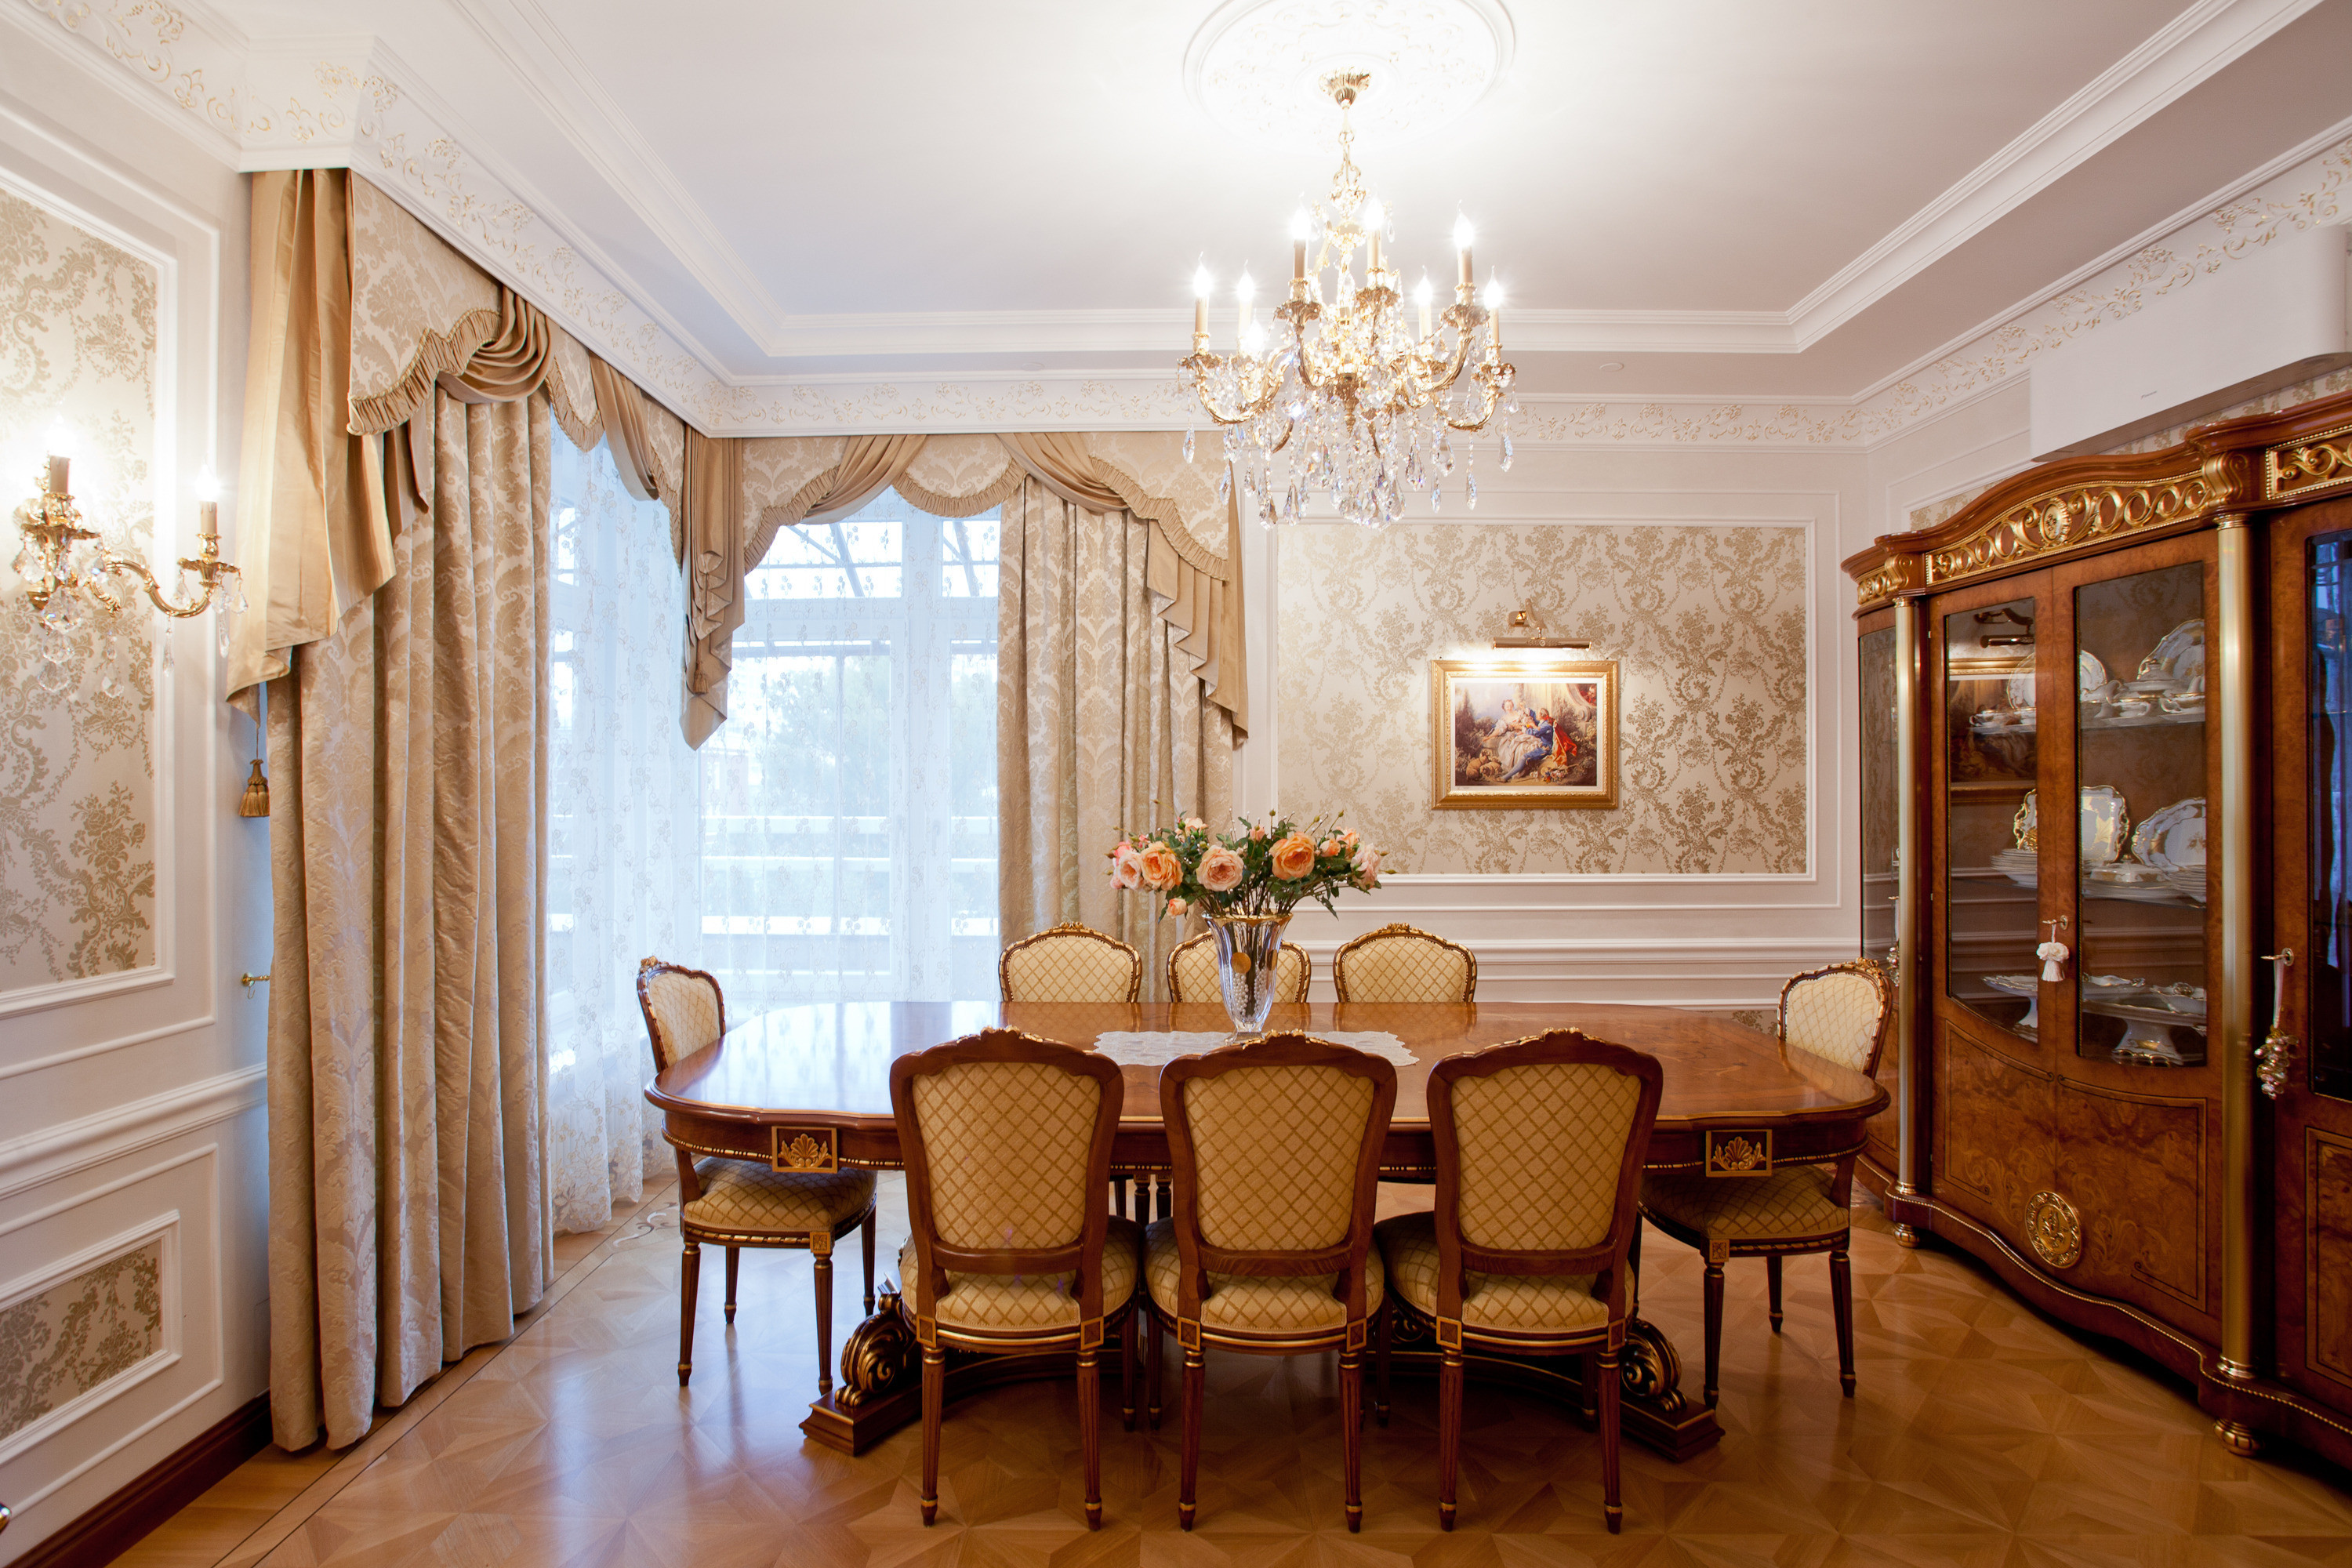 Интерьер гостиной в классическом стиле с современными акцентами (фото)